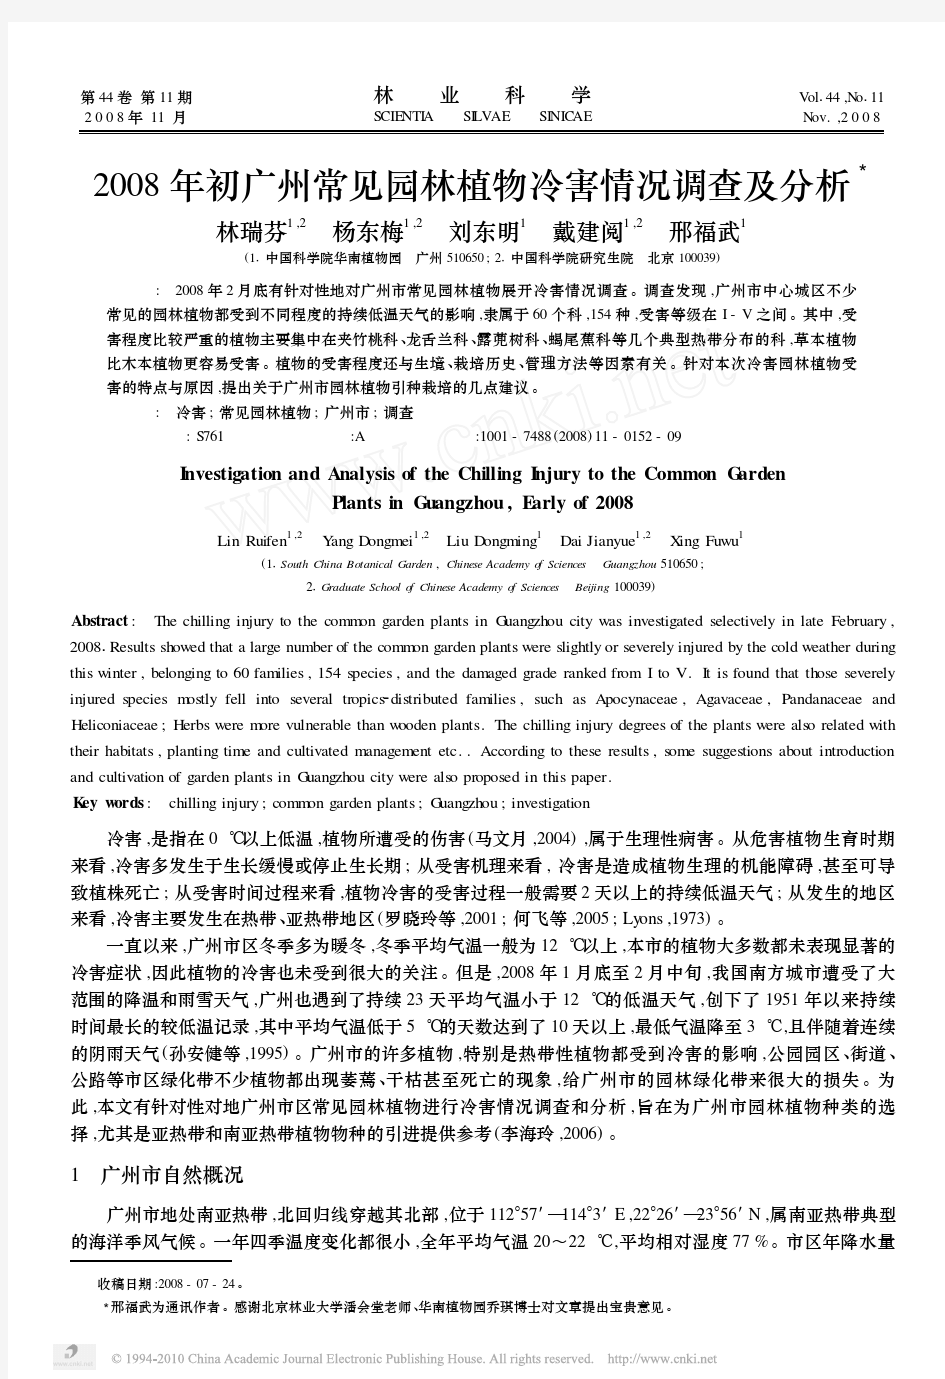 2008年初广州常见园林植物冷害情况调查及分析